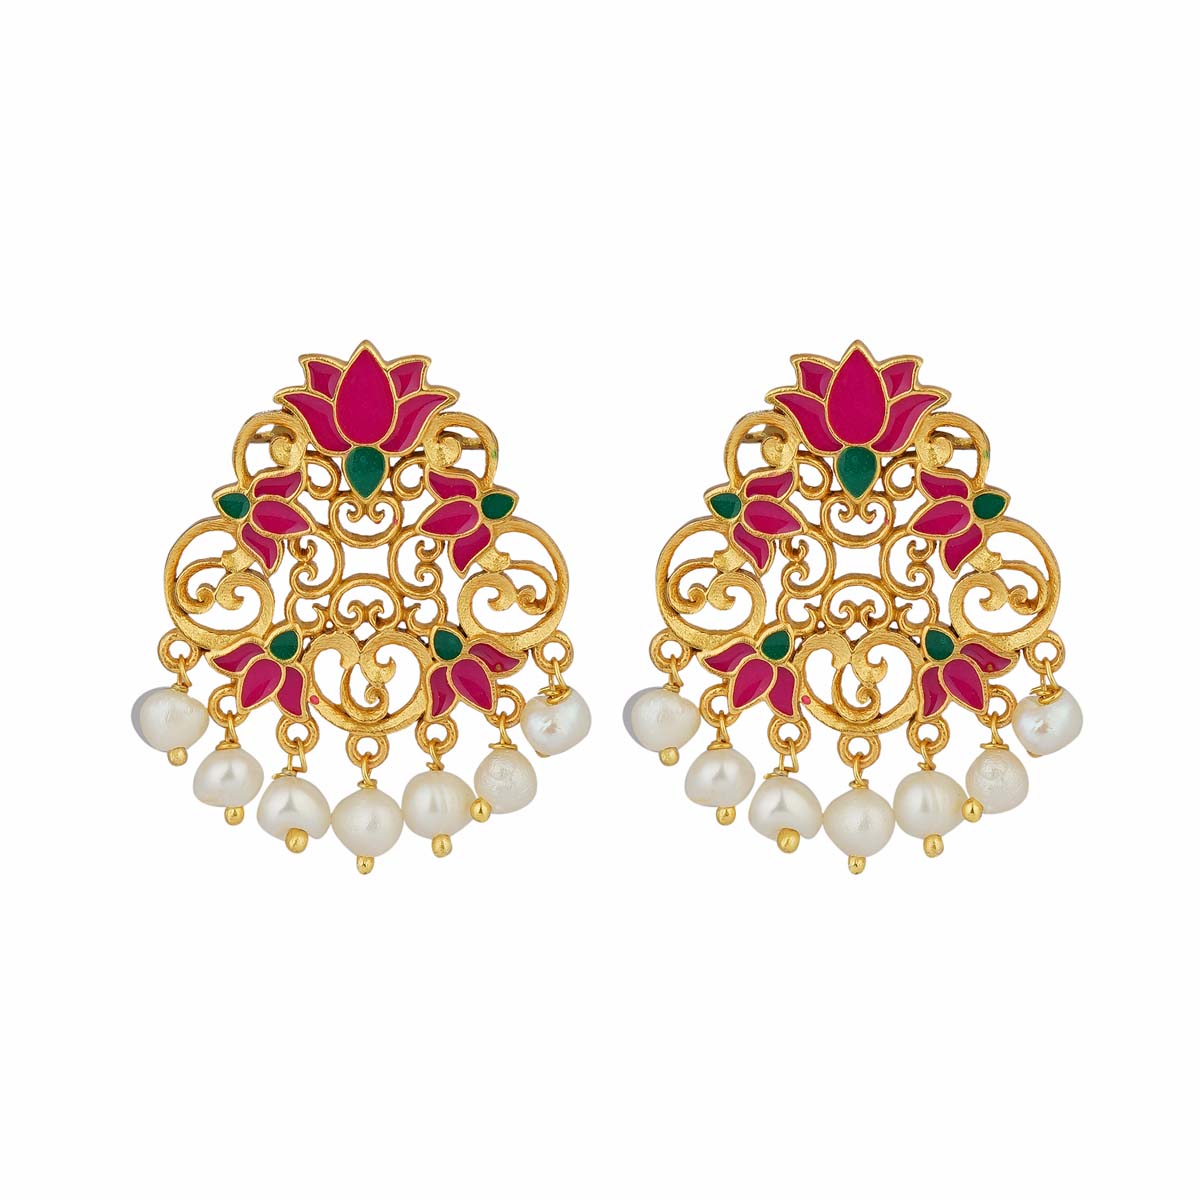 Glory Lotus Stud Earrings in Pink Enamel